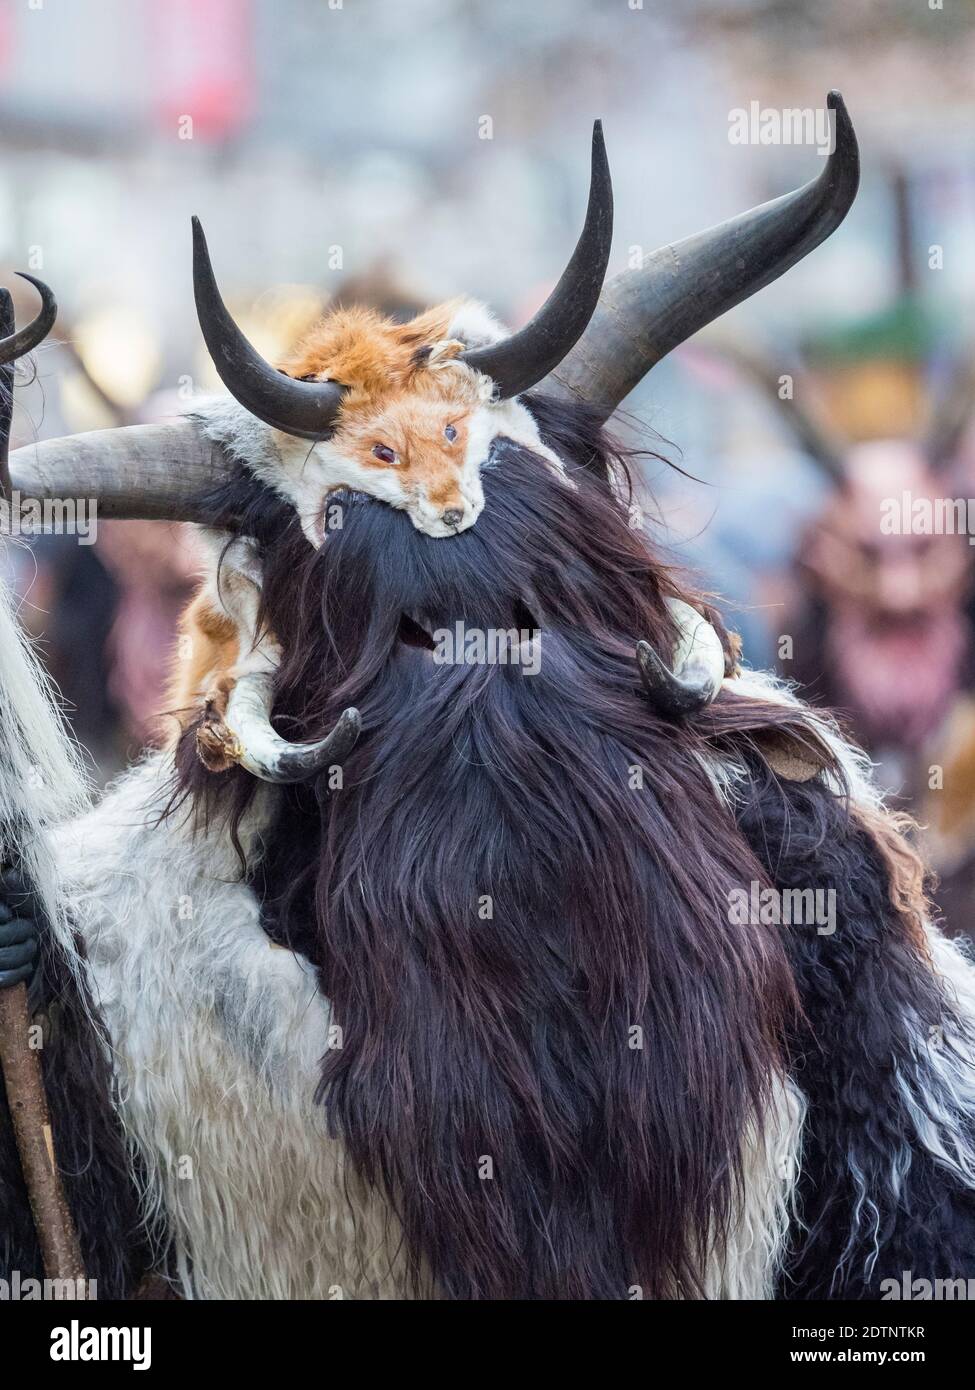 Krampuslauf o Perchtenlauf durante el advenimiento en Munich, una antigua tradición alpina que tiene lugar durante la época de Navidad en Baviera, Austria y Tirol del Sur. Foto de stock